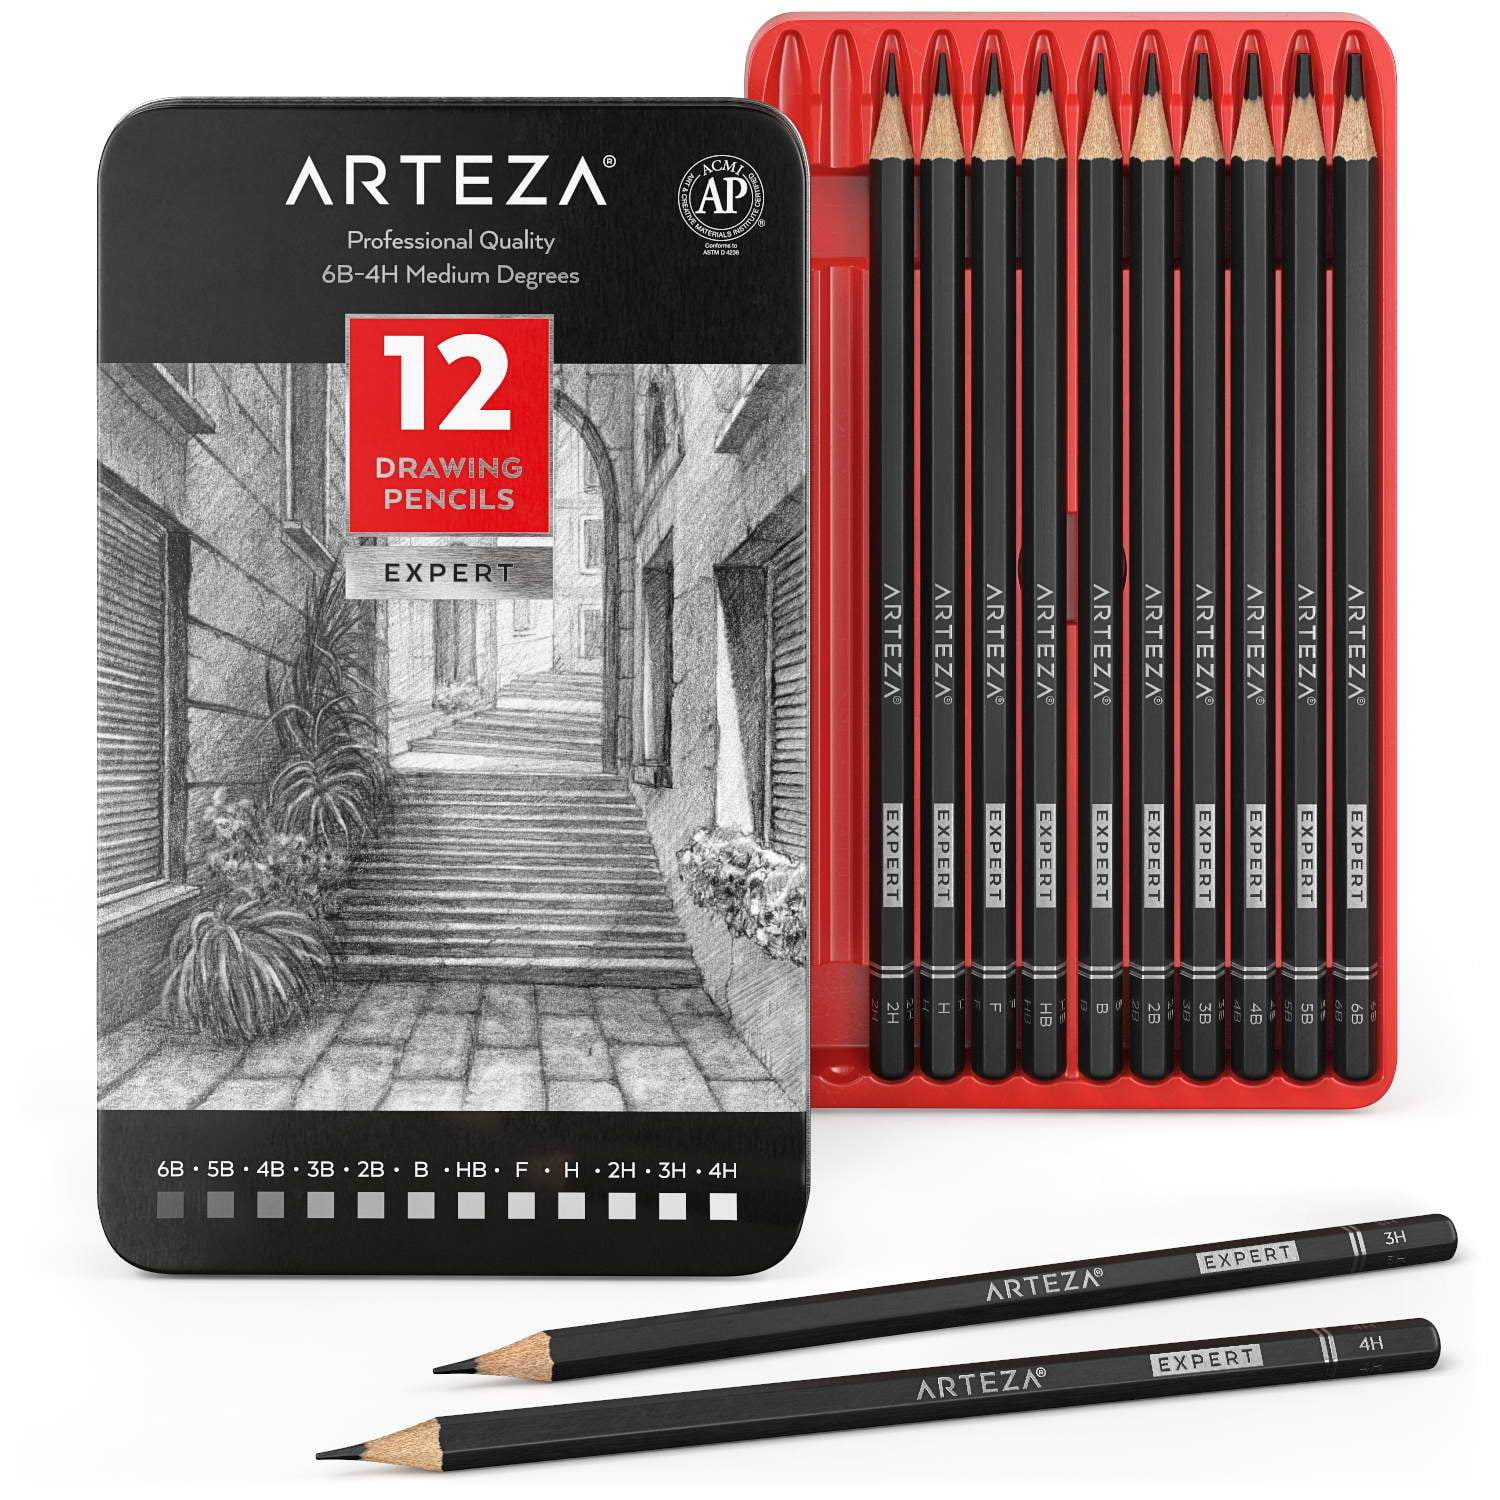 Arteza Professional Drawing Pencils Pack Of 12 Walmart Com Walmart Com